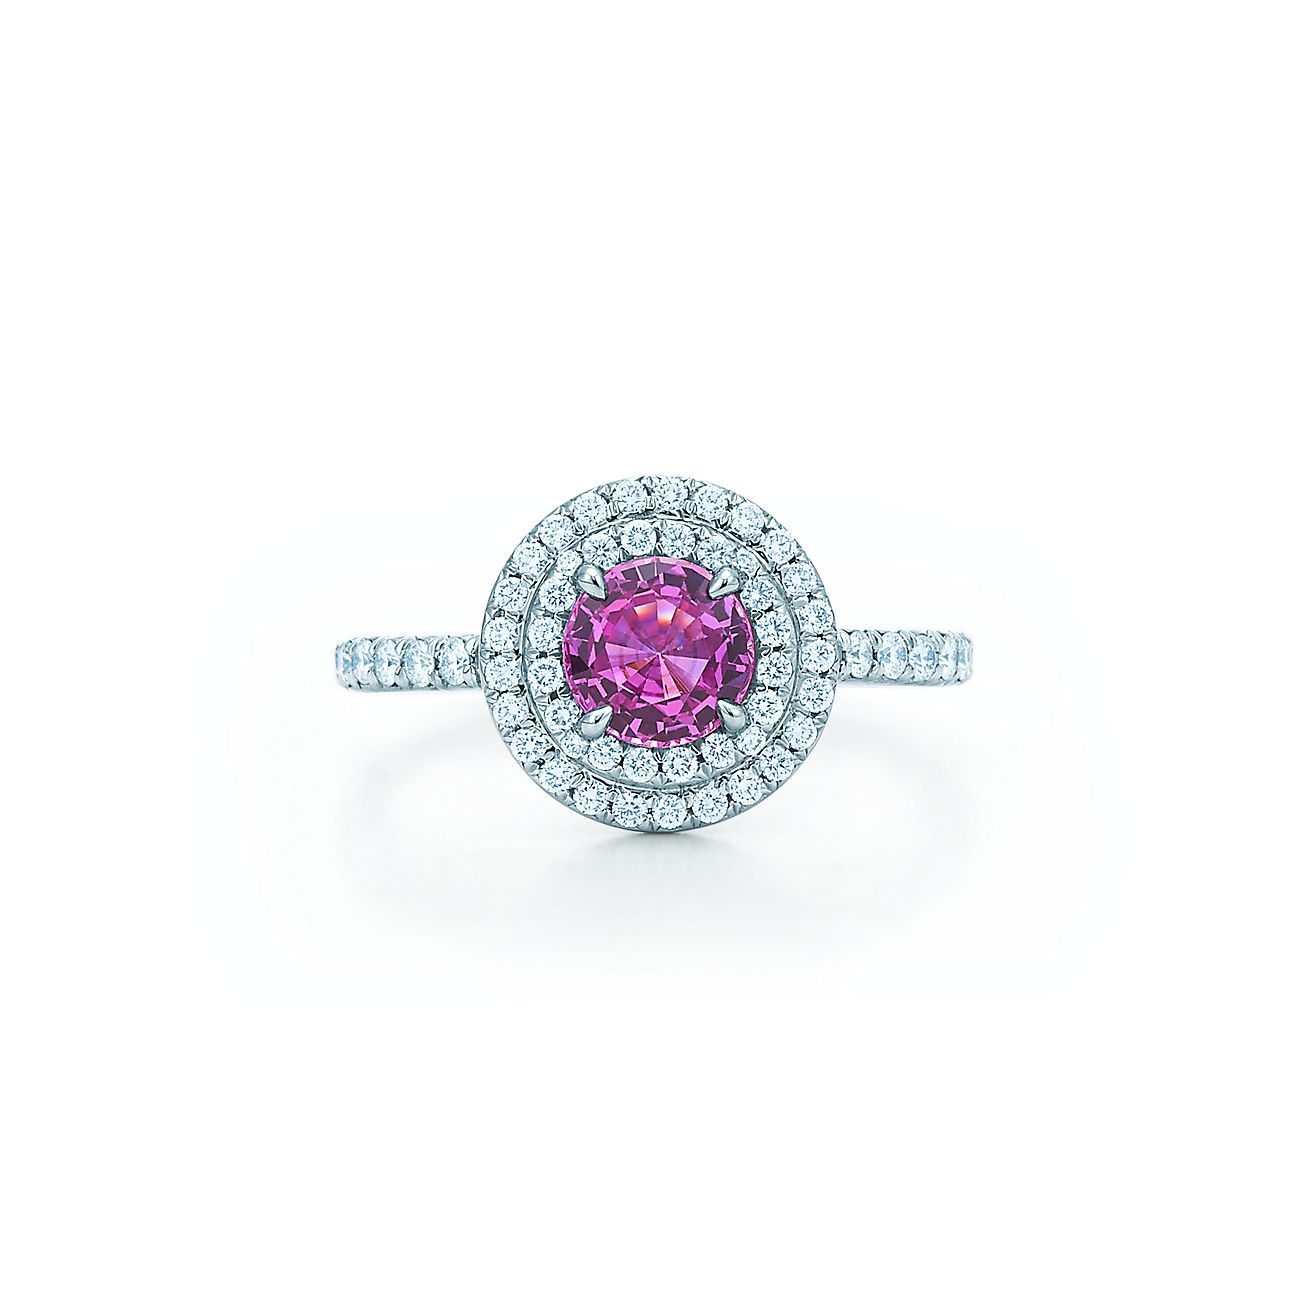 ティファニー ソレスト リング 0 45カラット ピンク サファイヤ ダイヤモンド プラチナ Tiffany Co